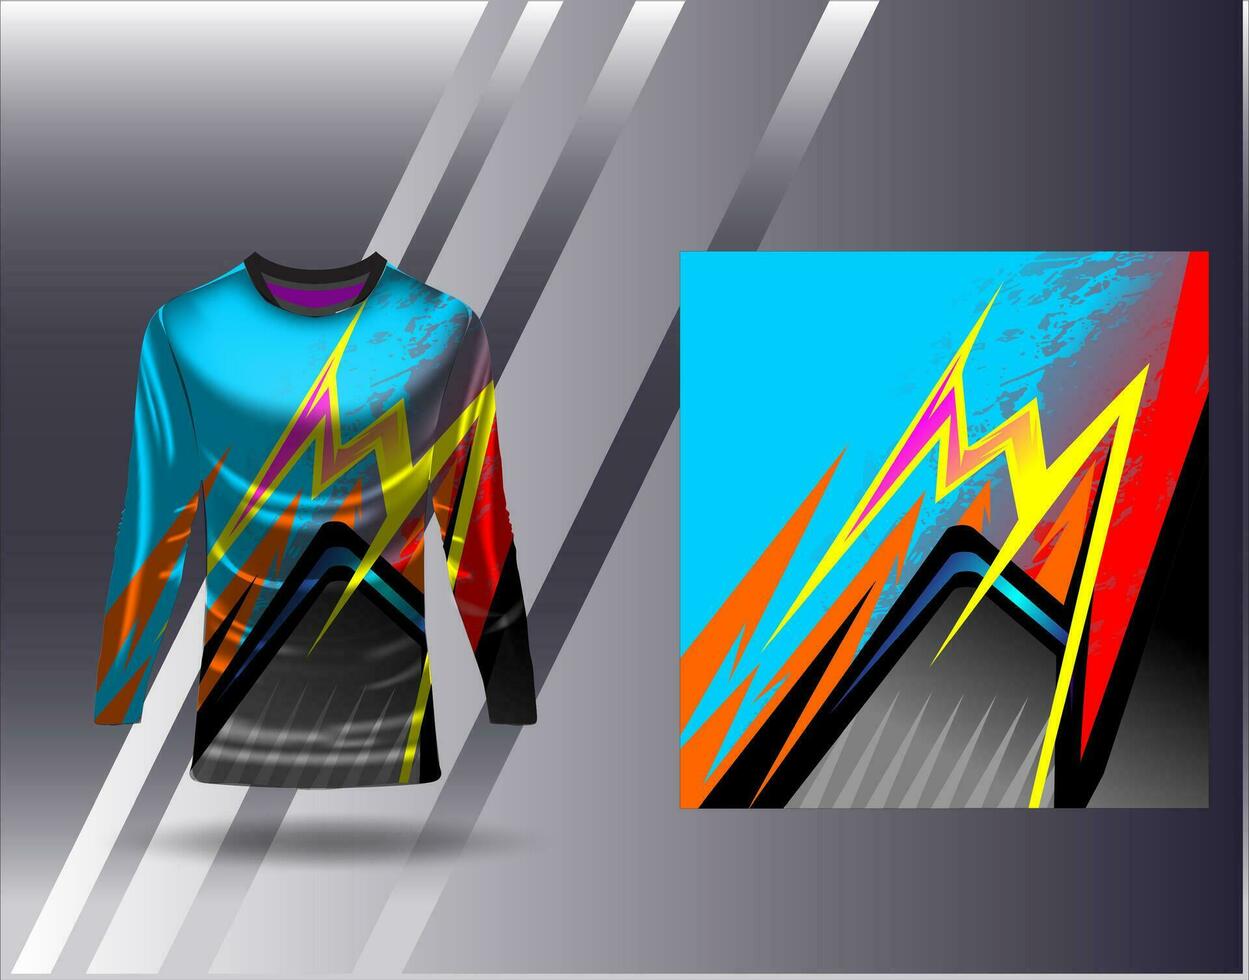 Deportes jersey y camiseta modelo Deportes diseño para fútbol americano carreras juego de azar jersey vector